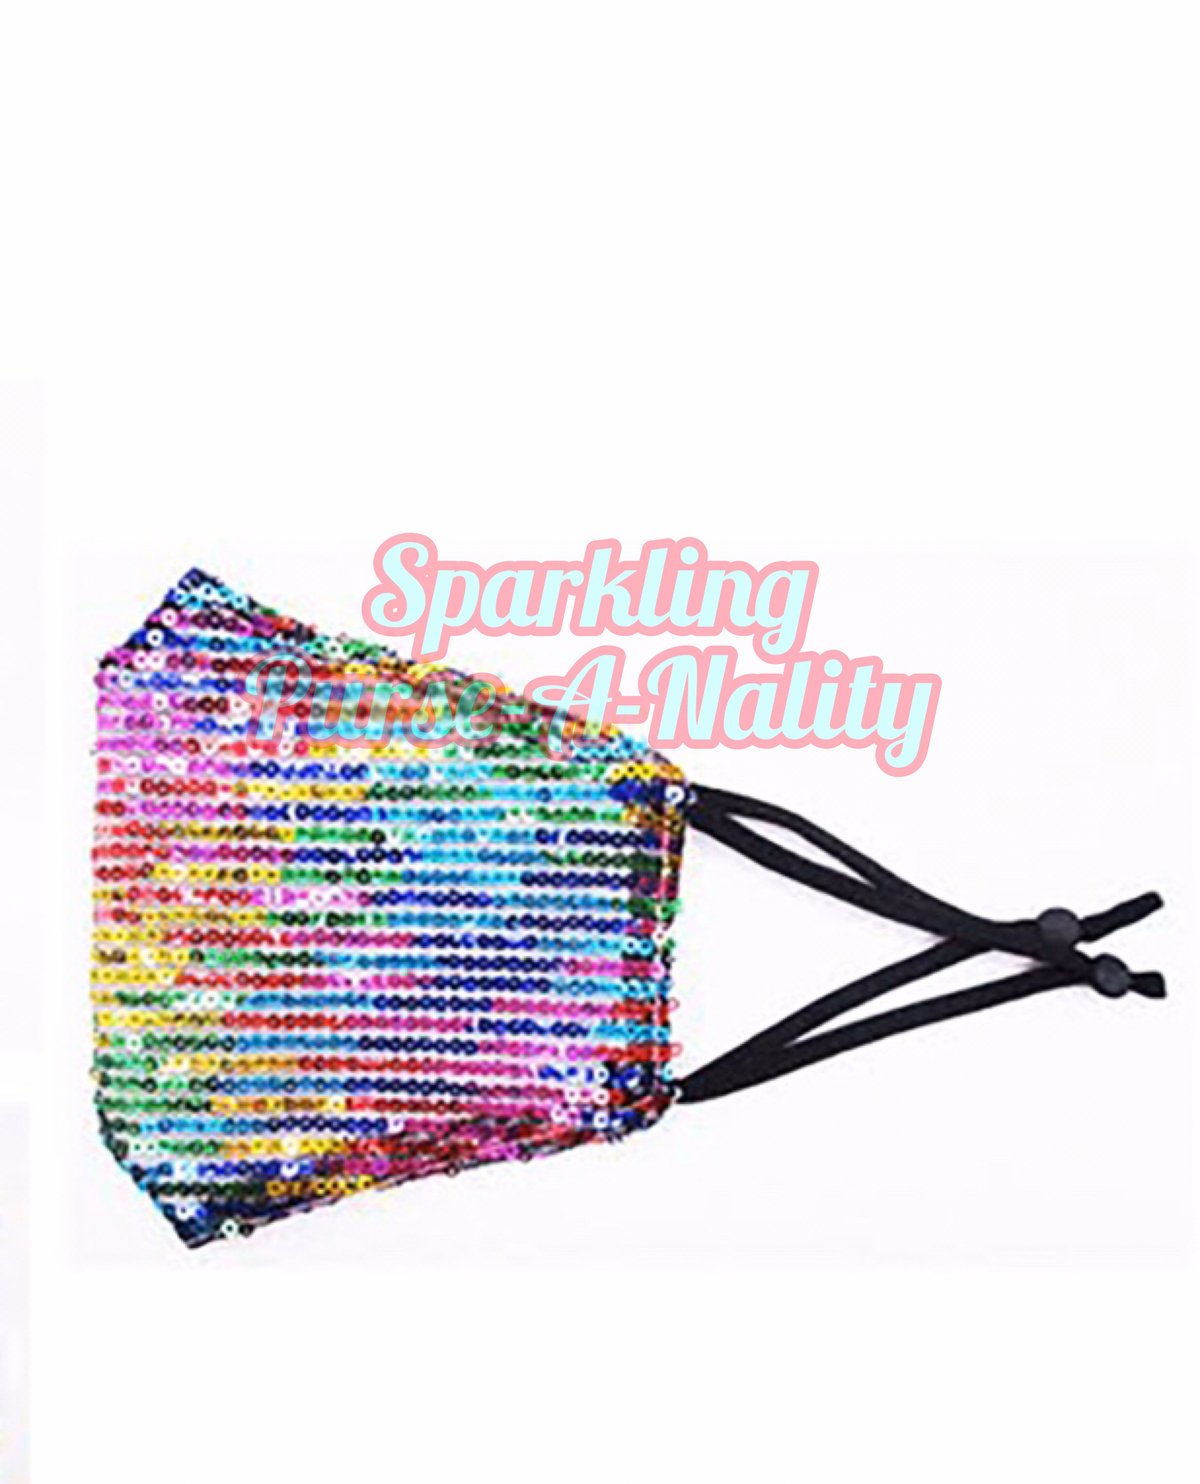 Image of “Sparkling” Rainbow Mask